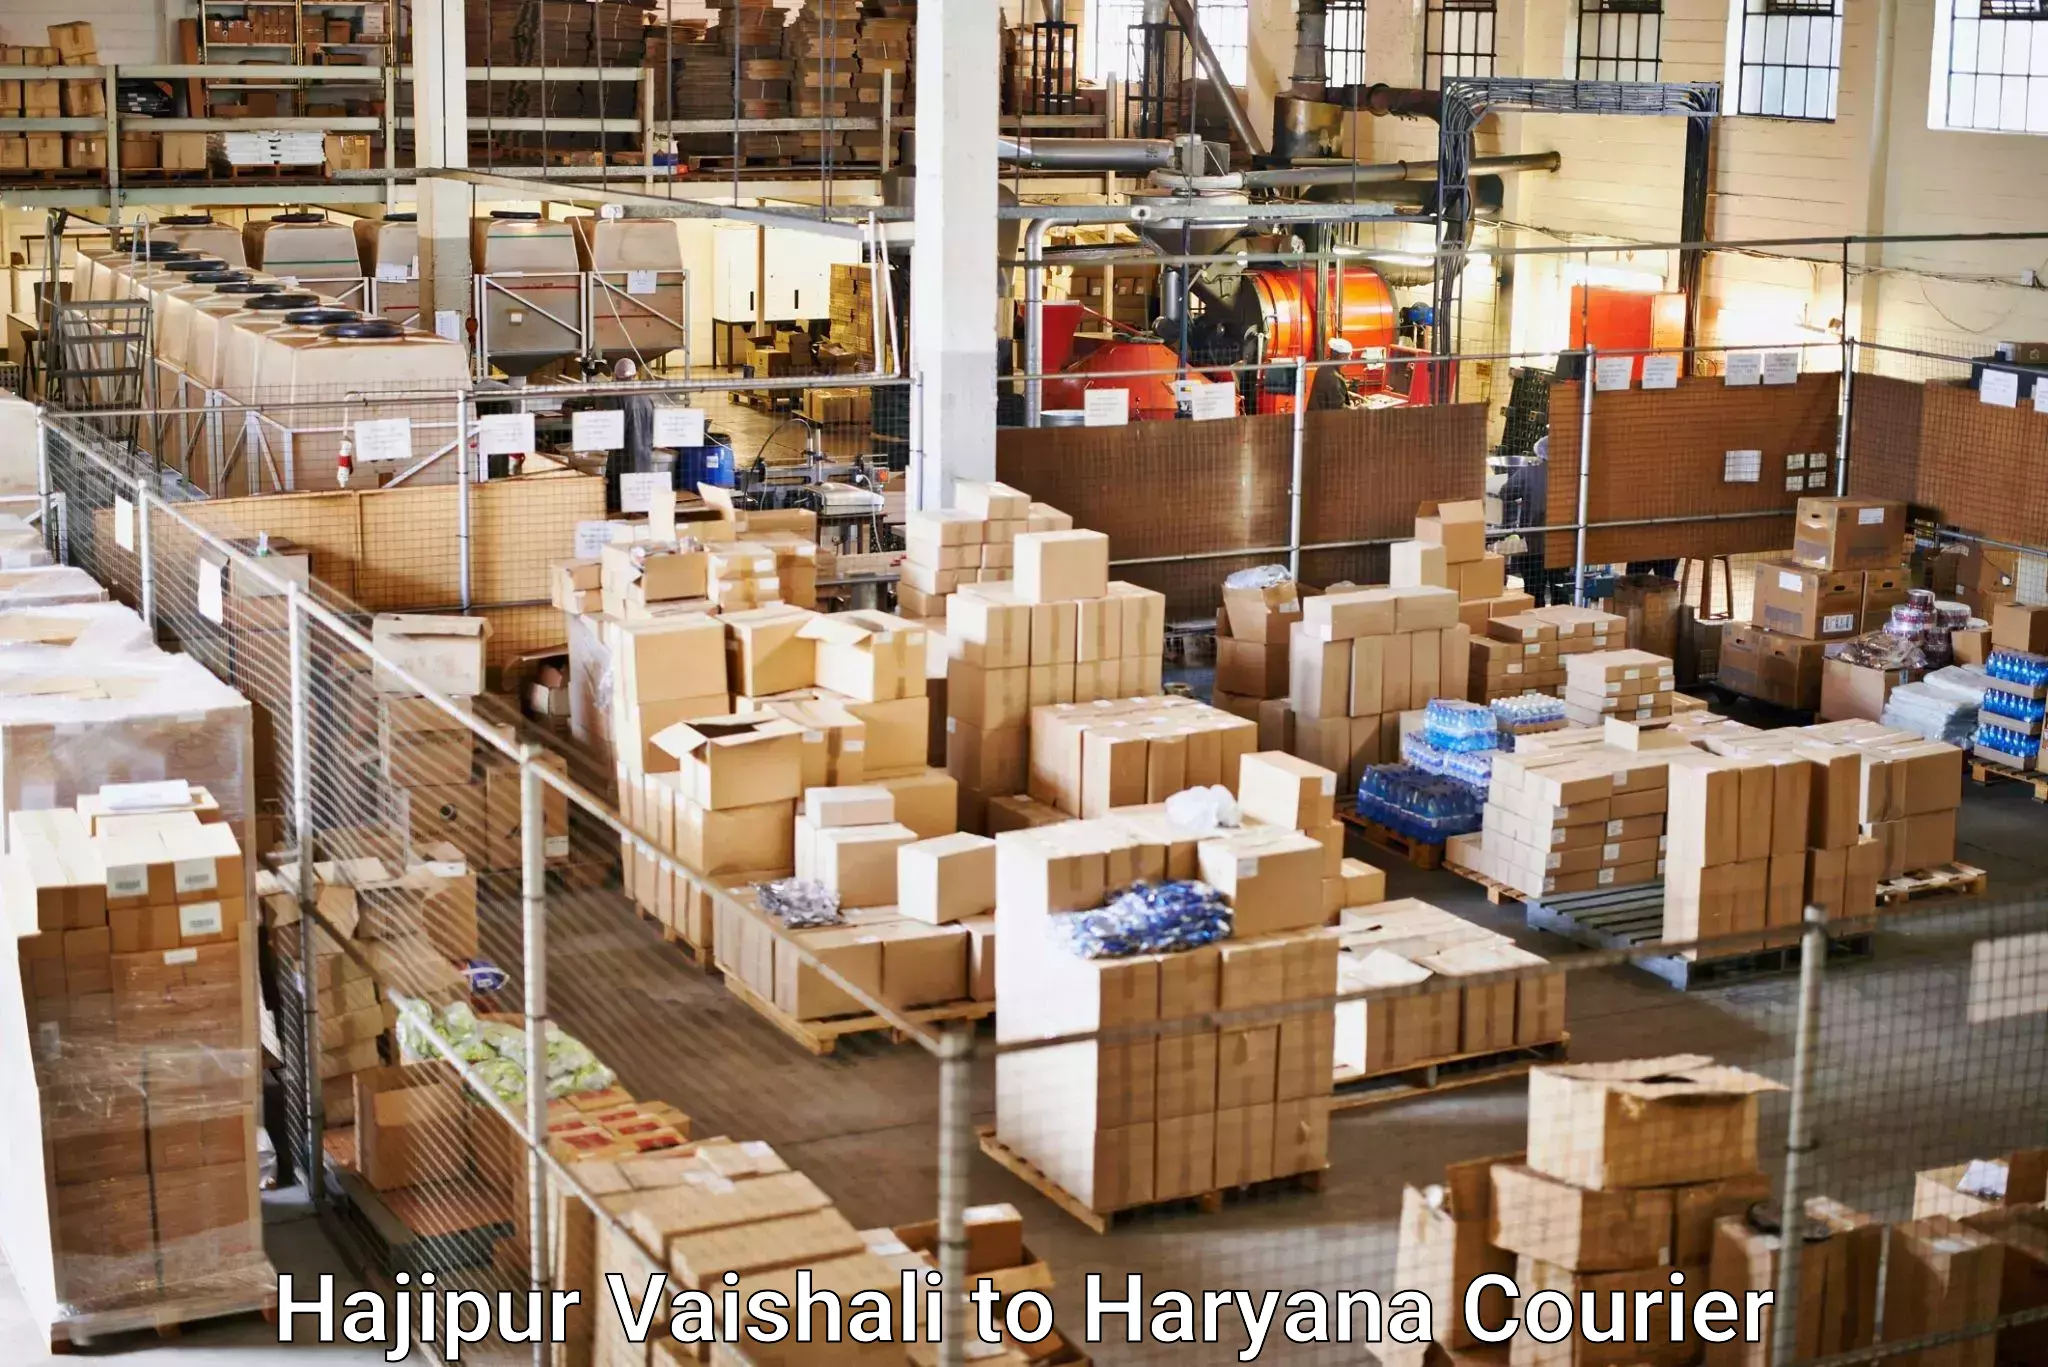 Advanced parcel tracking Hajipur Vaishali to Chaudhary Charan Singh Haryana Agricultural University Hisar